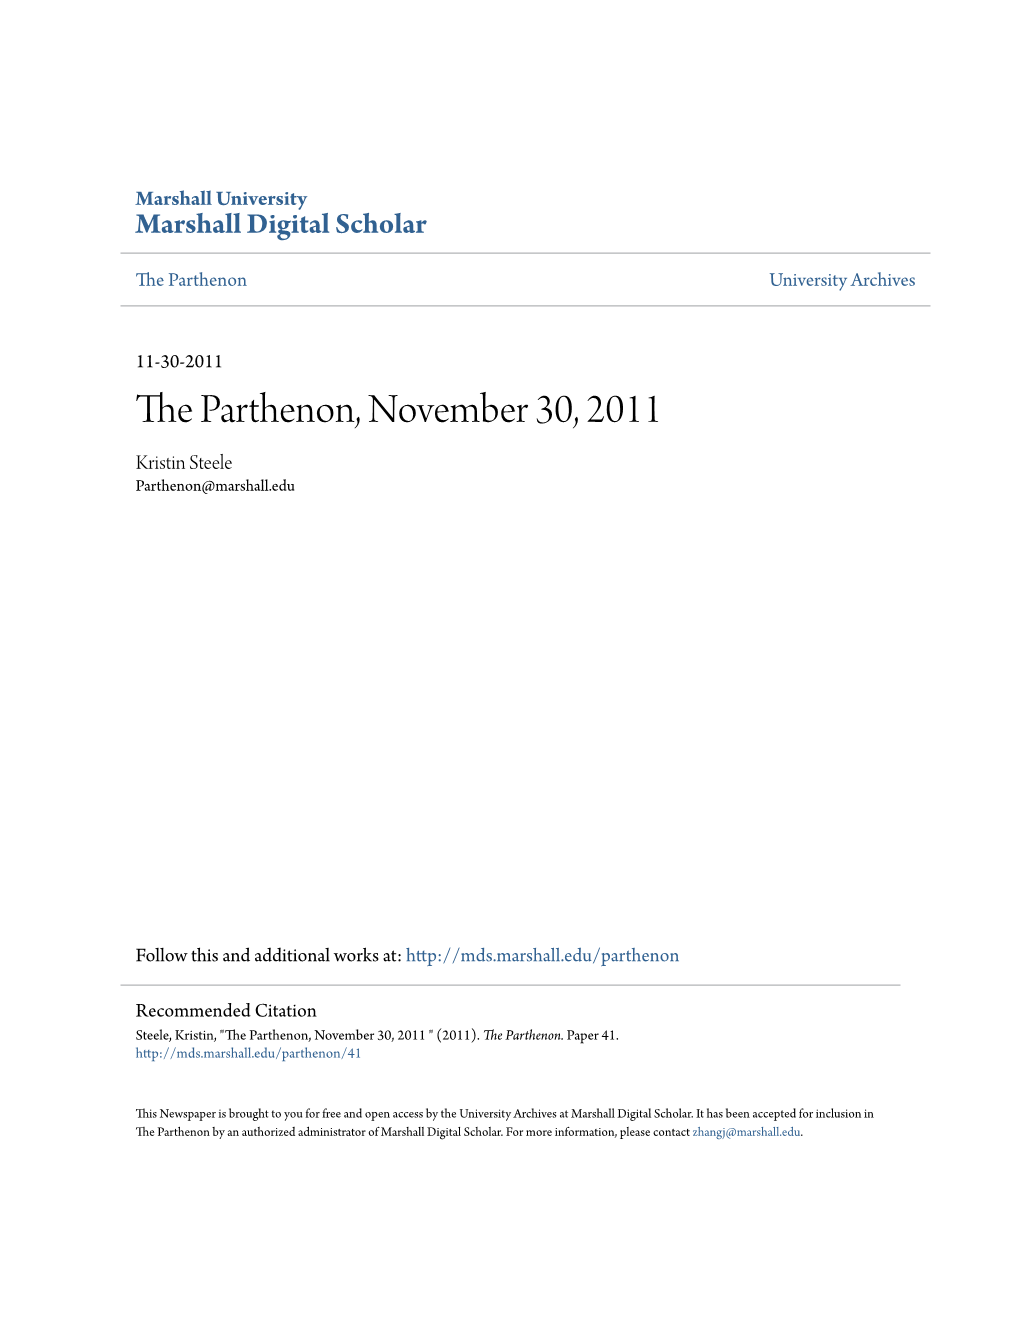 The Parthenon, November 30, 2011